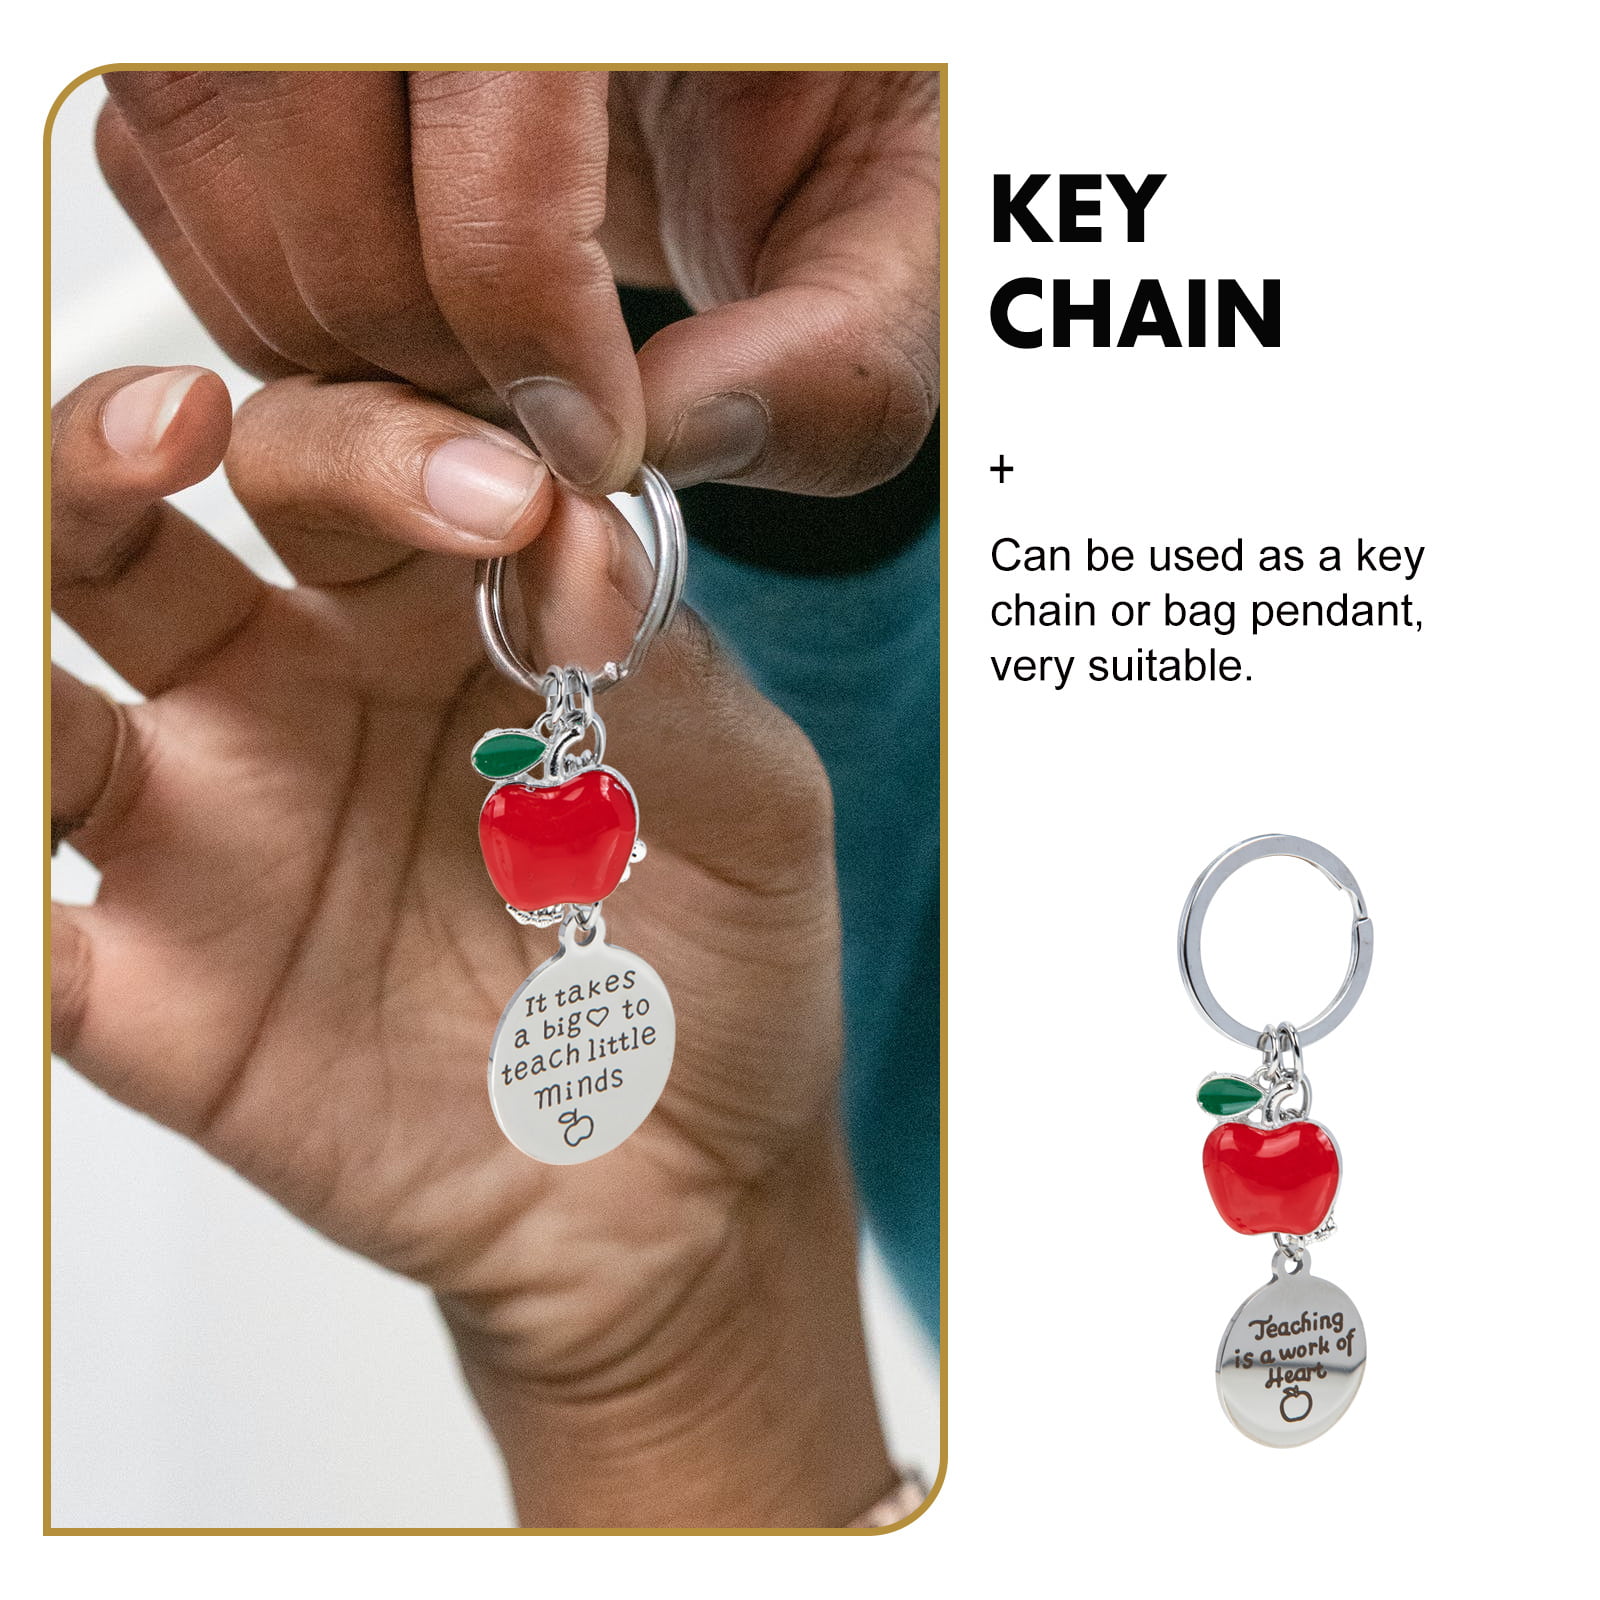 JewelryEveryday Teacher Appreciation Gifts | Yarn, Needle, & Scissors Keychain by JE Silver 125+